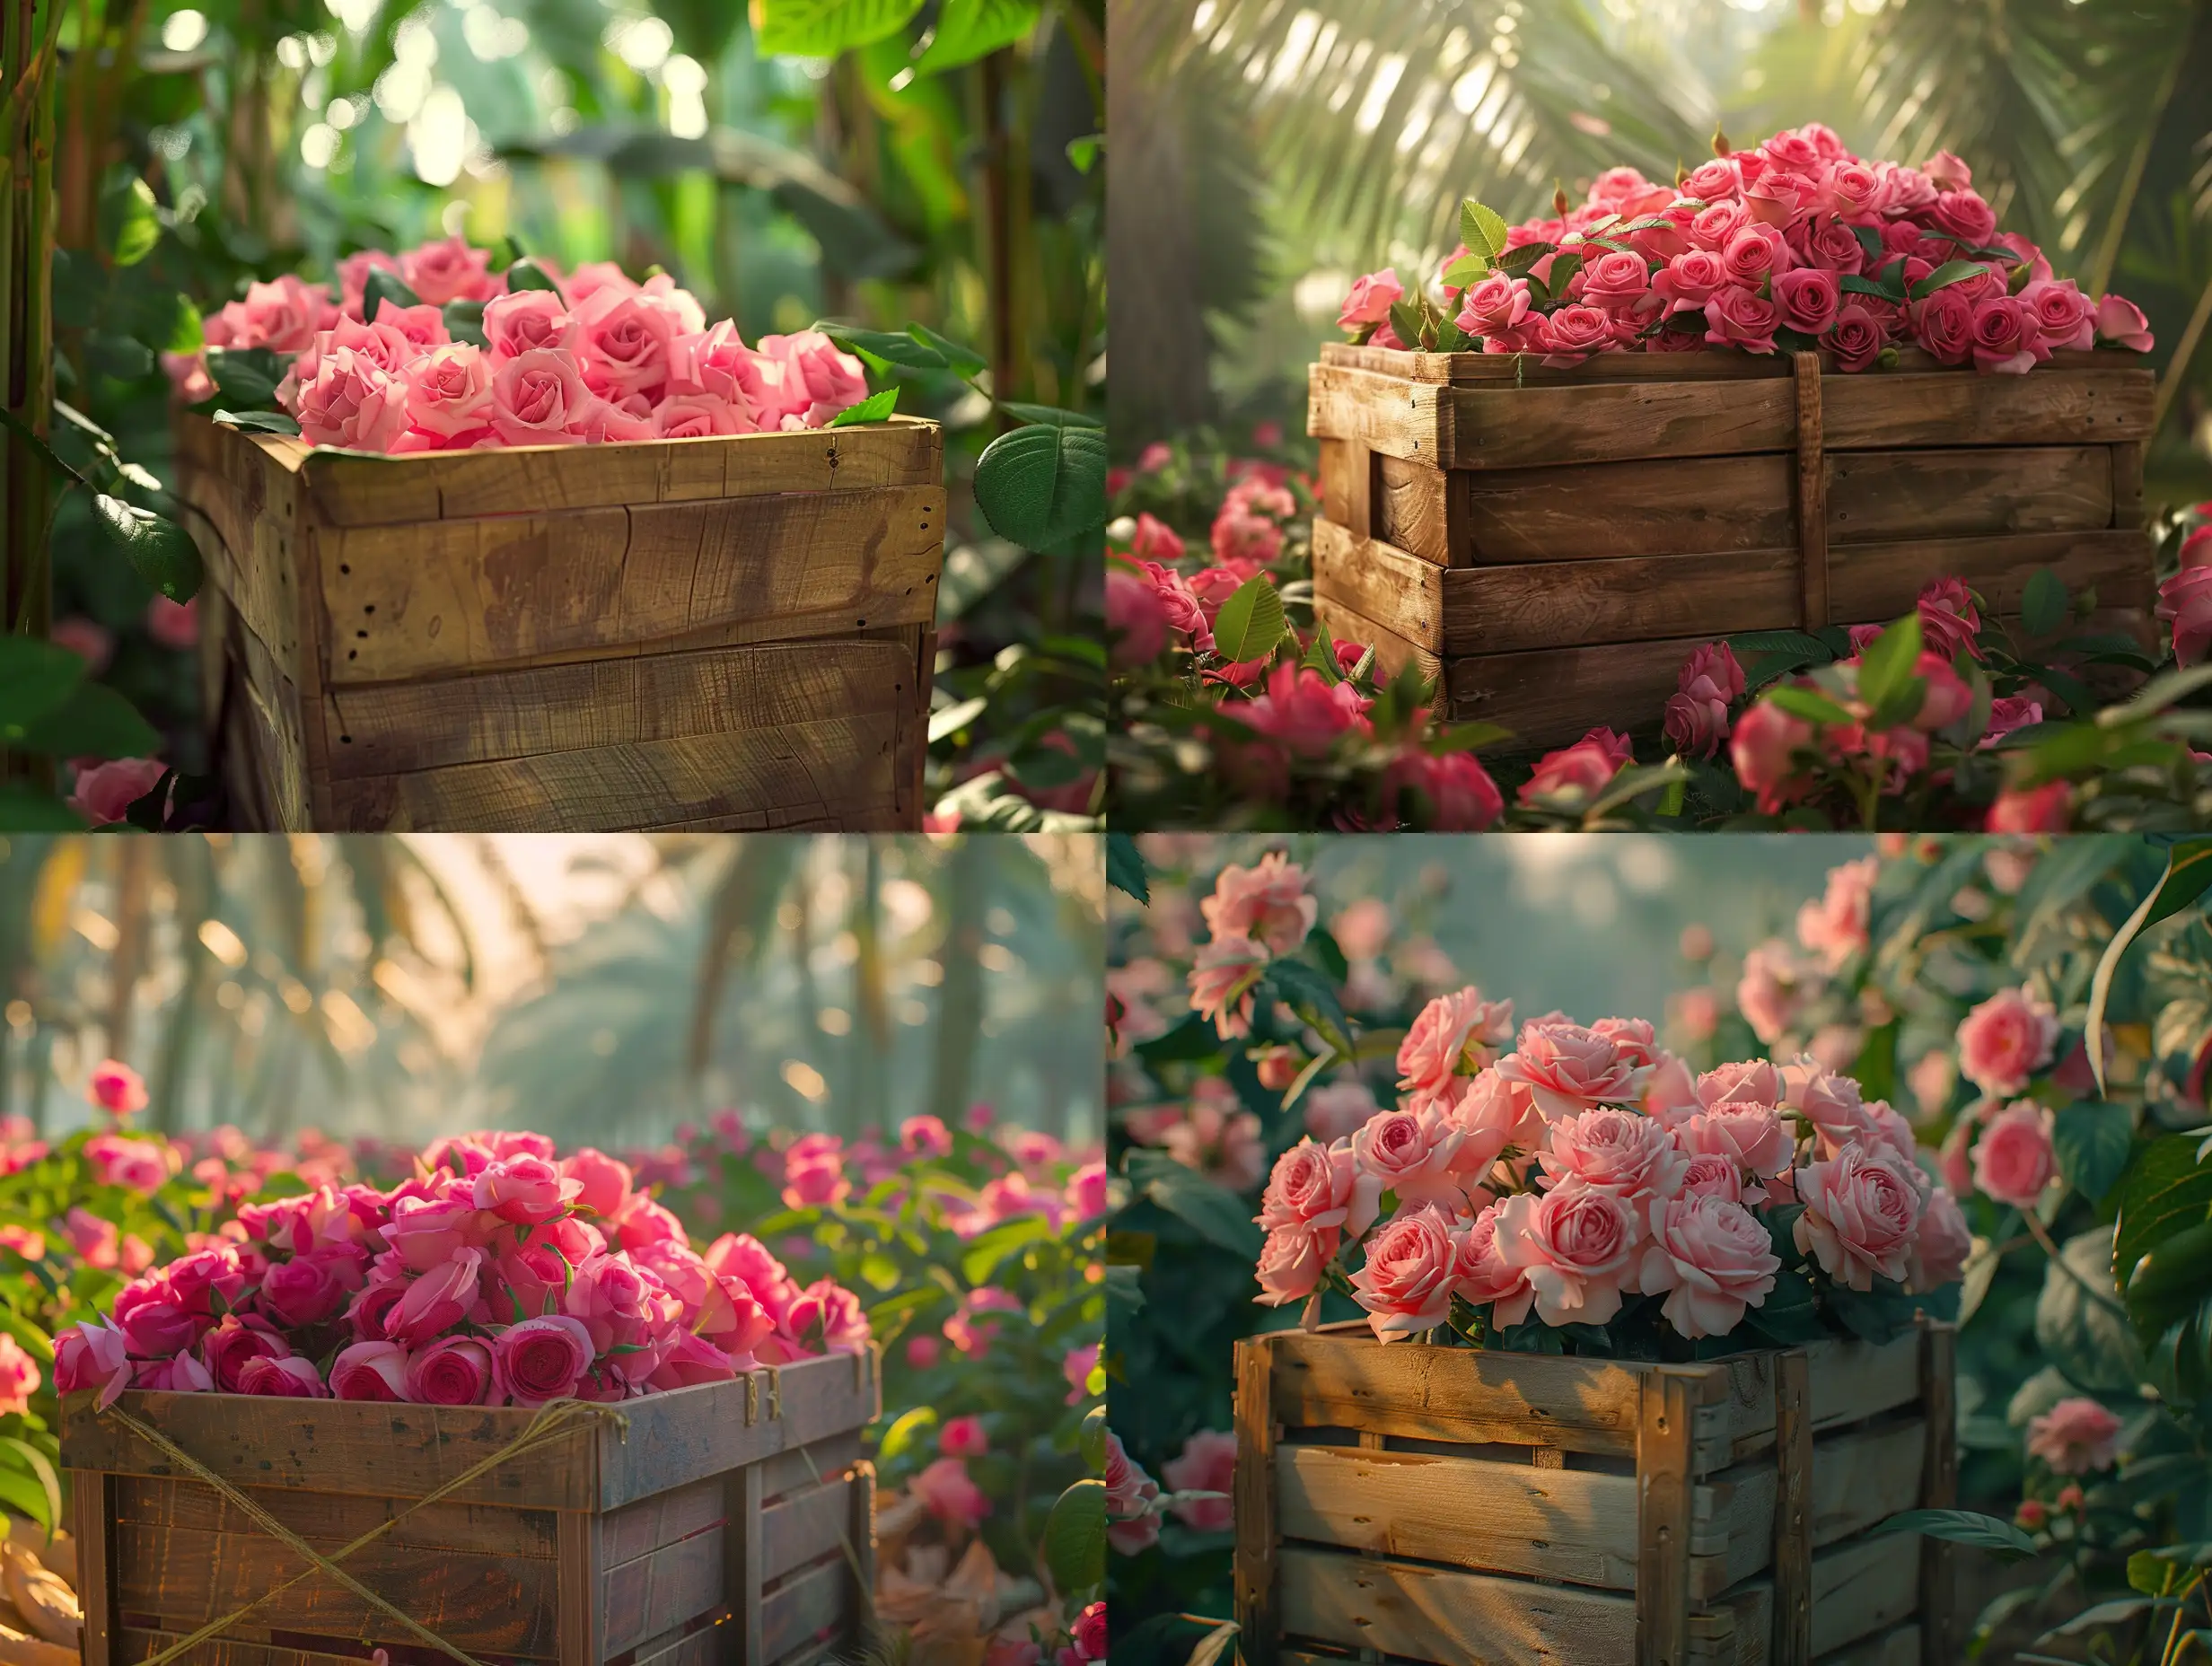 Vibrant-Taif-Rose-Basket-in-Al-Shifa-Farm-Jungle-Landscape